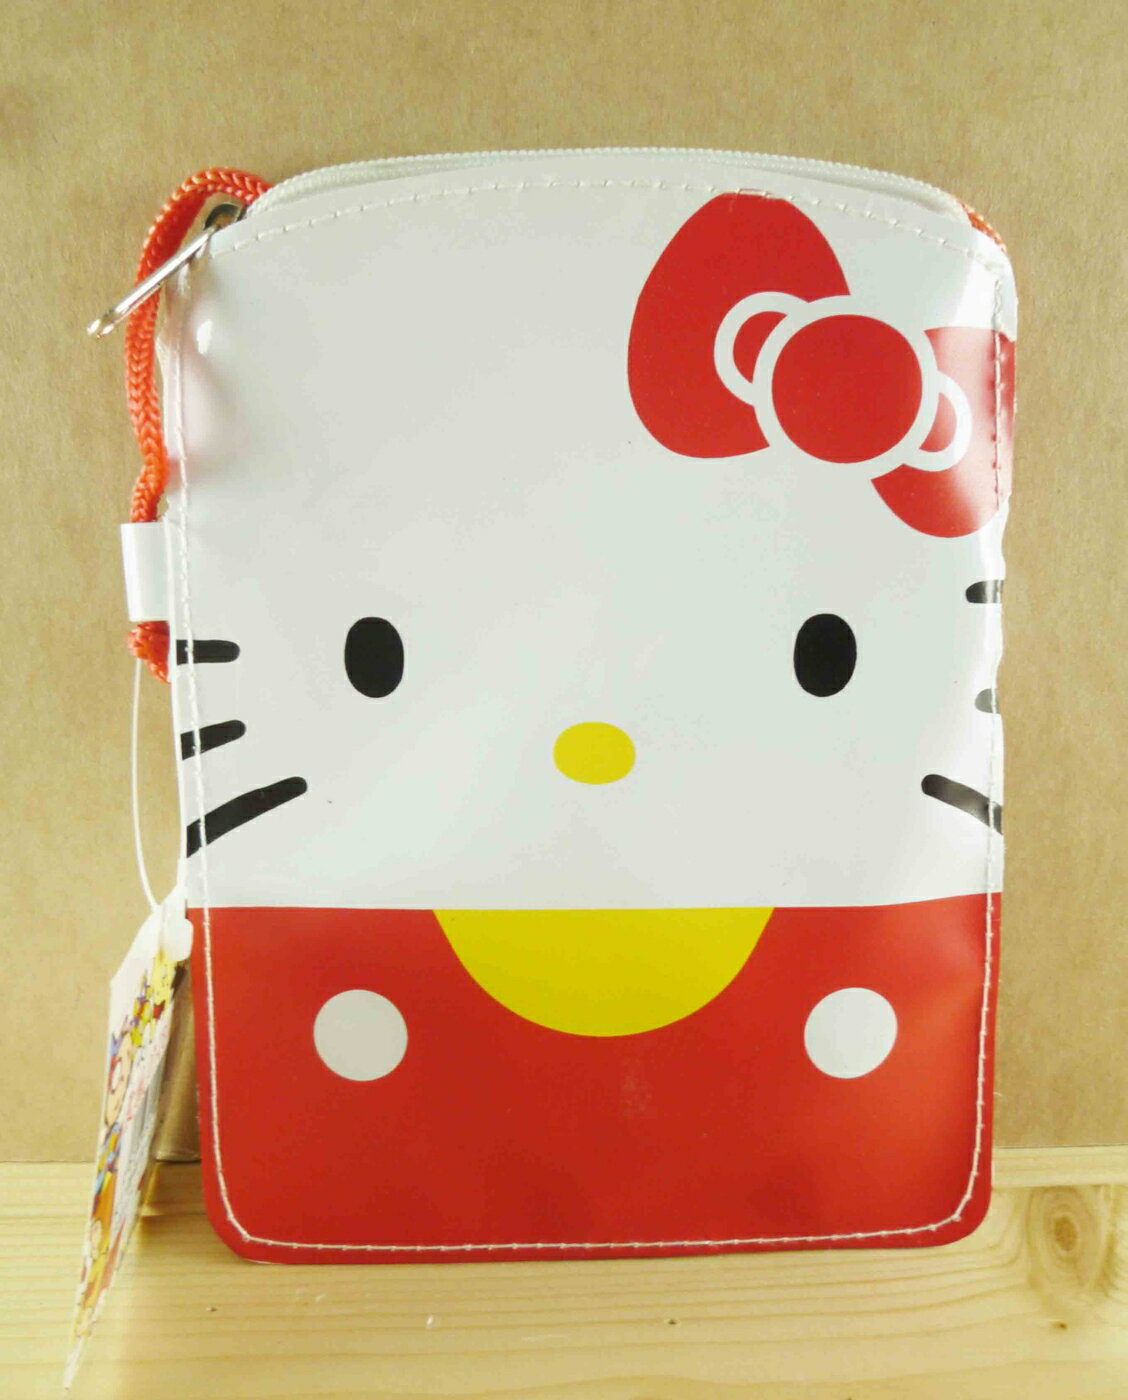 【震撼精品百貨】Hello Kitty 凱蒂貓-造型零錢包-紅色 震撼日式精品百貨